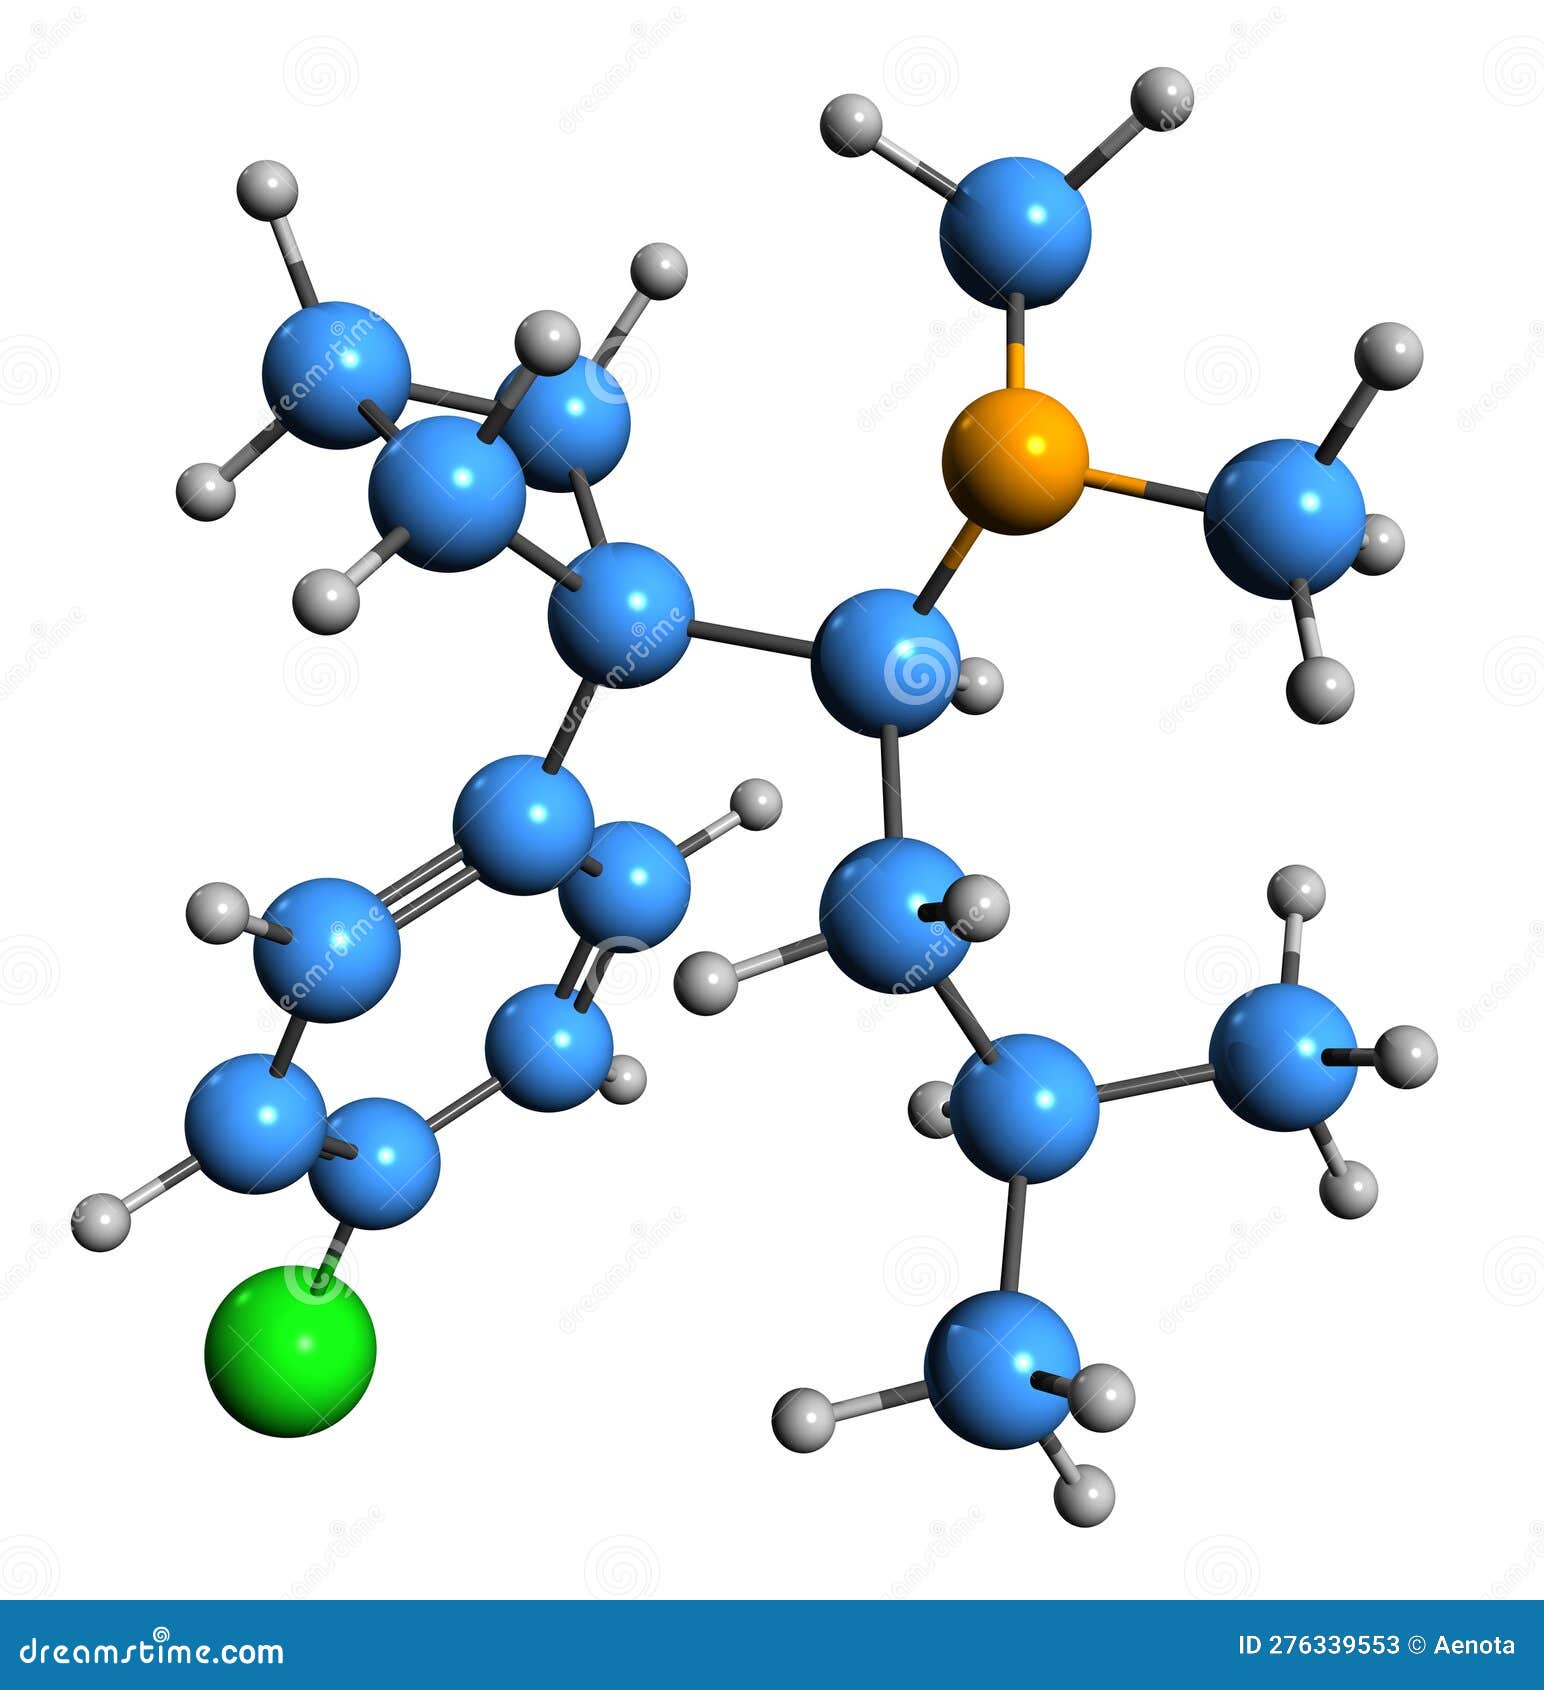 3d image of sibutramine skeletal formula